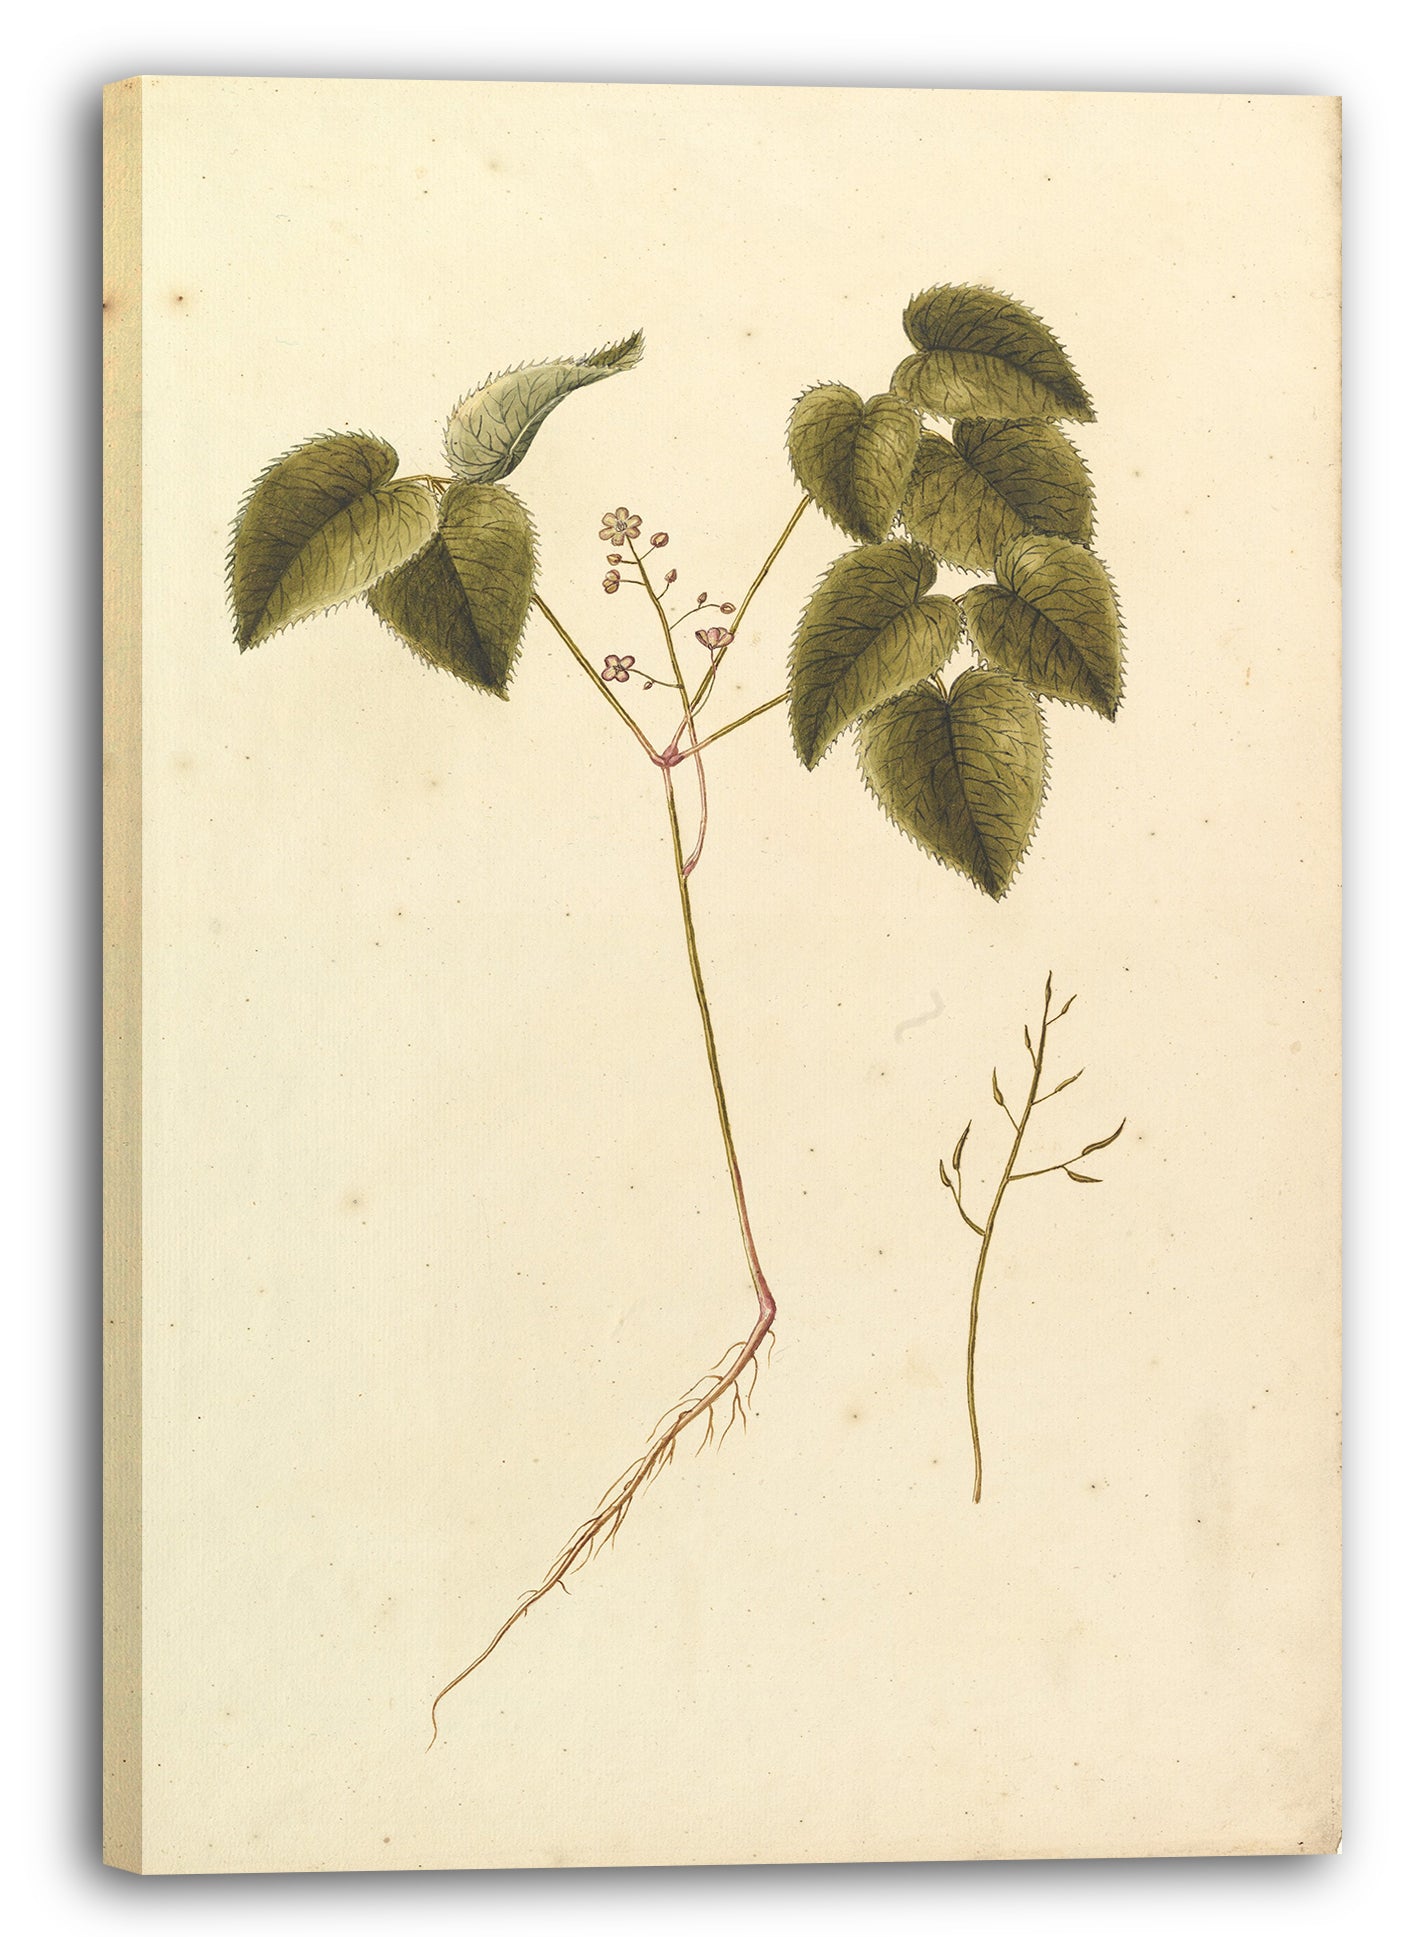 Leinwandbild Anonym, Französisch, 19. Jahrhundert - Blumen-Studie